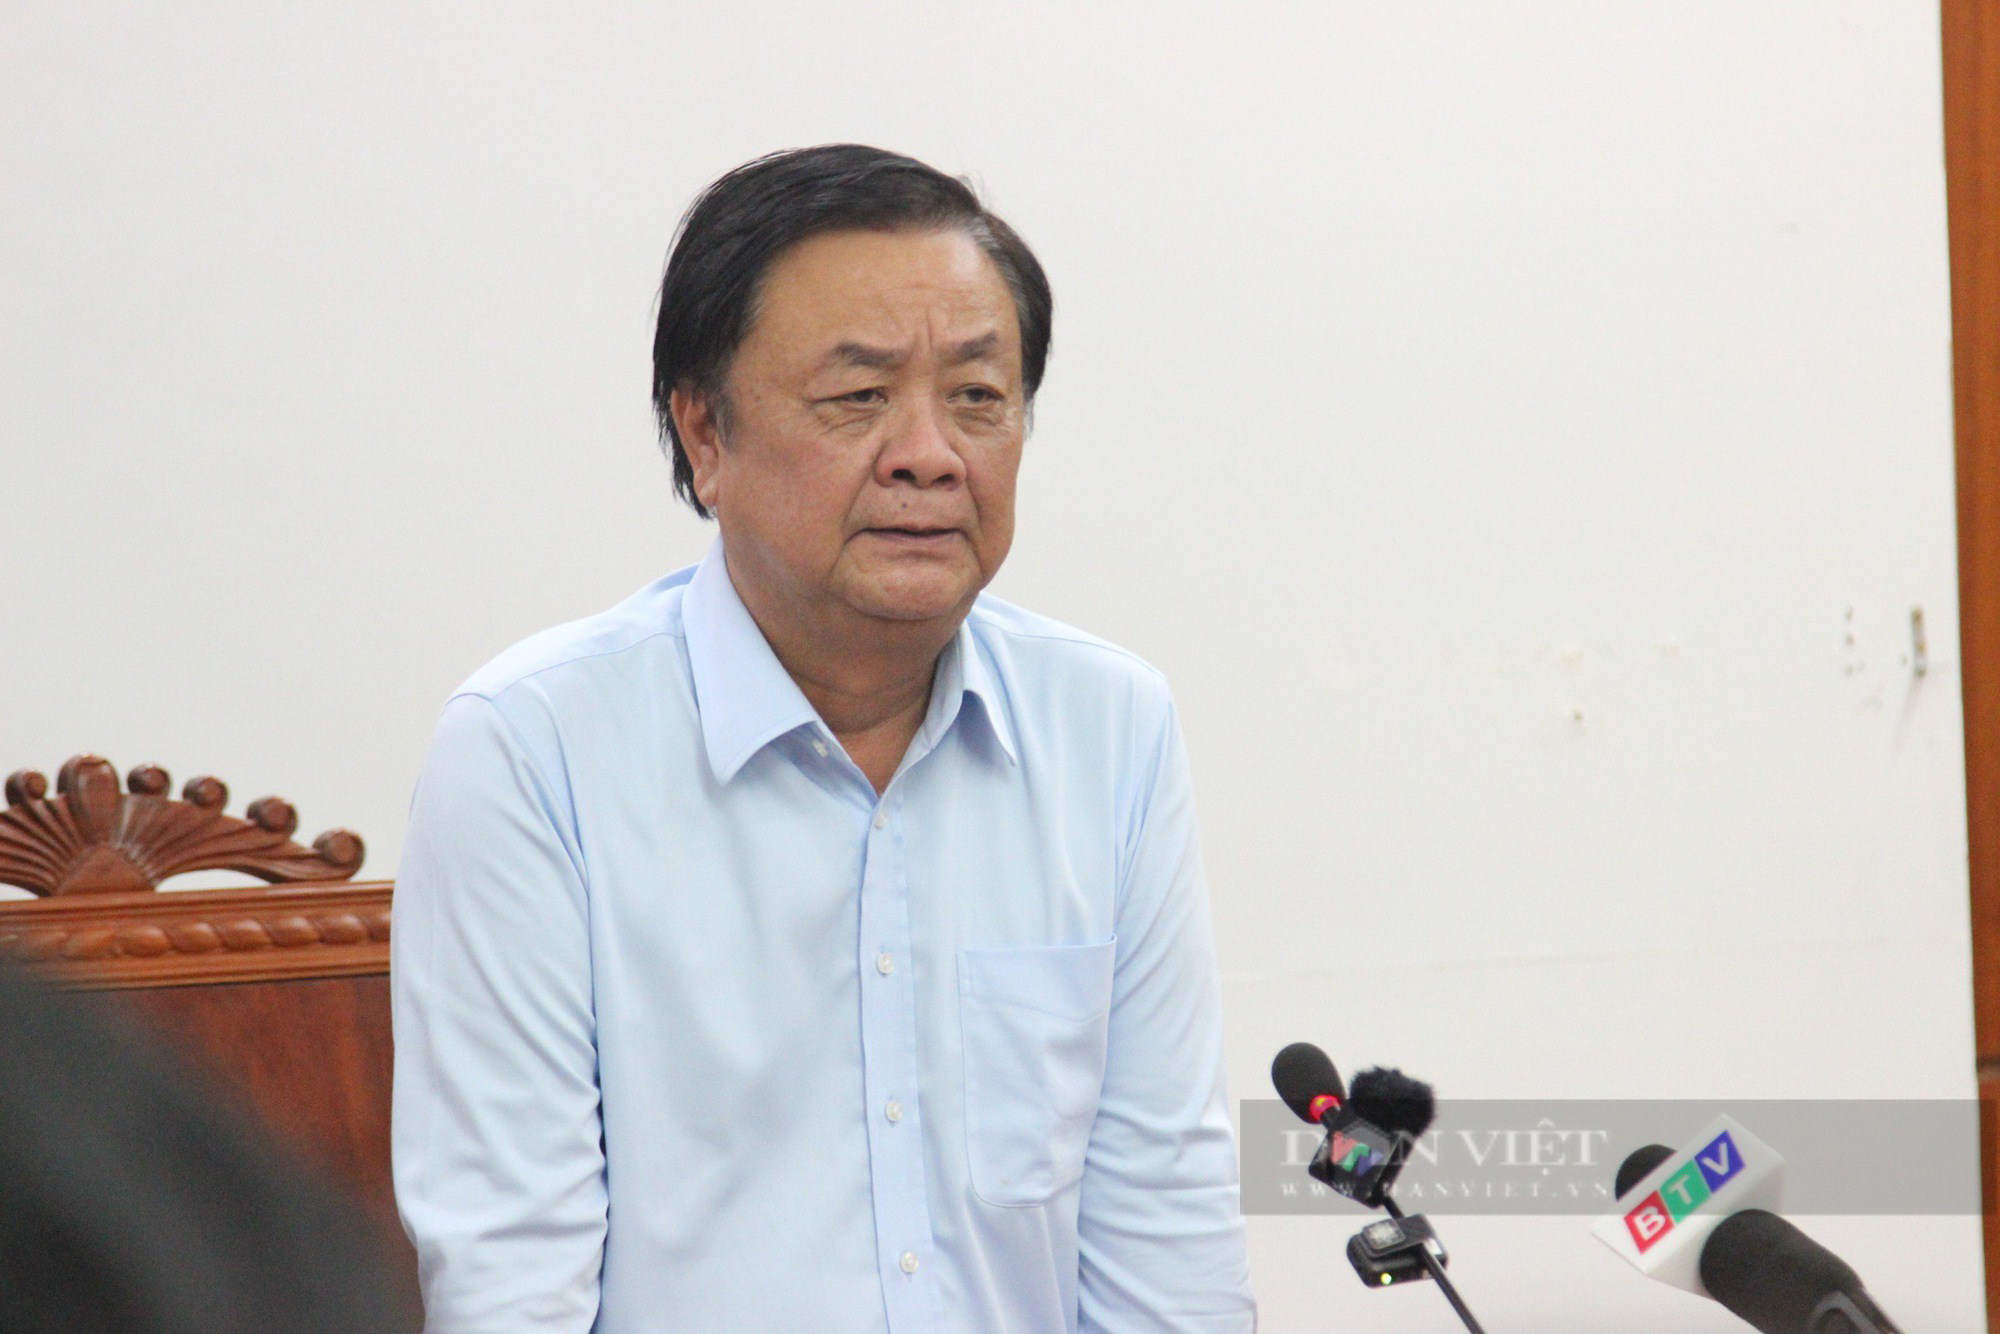 Chủ tịch UBND tỉnh Bình Định: Đang xin ý kiến về việc  cấm biển hơn 100 tàu nghi ngờ cao vi phạm IUU- Ảnh 3.